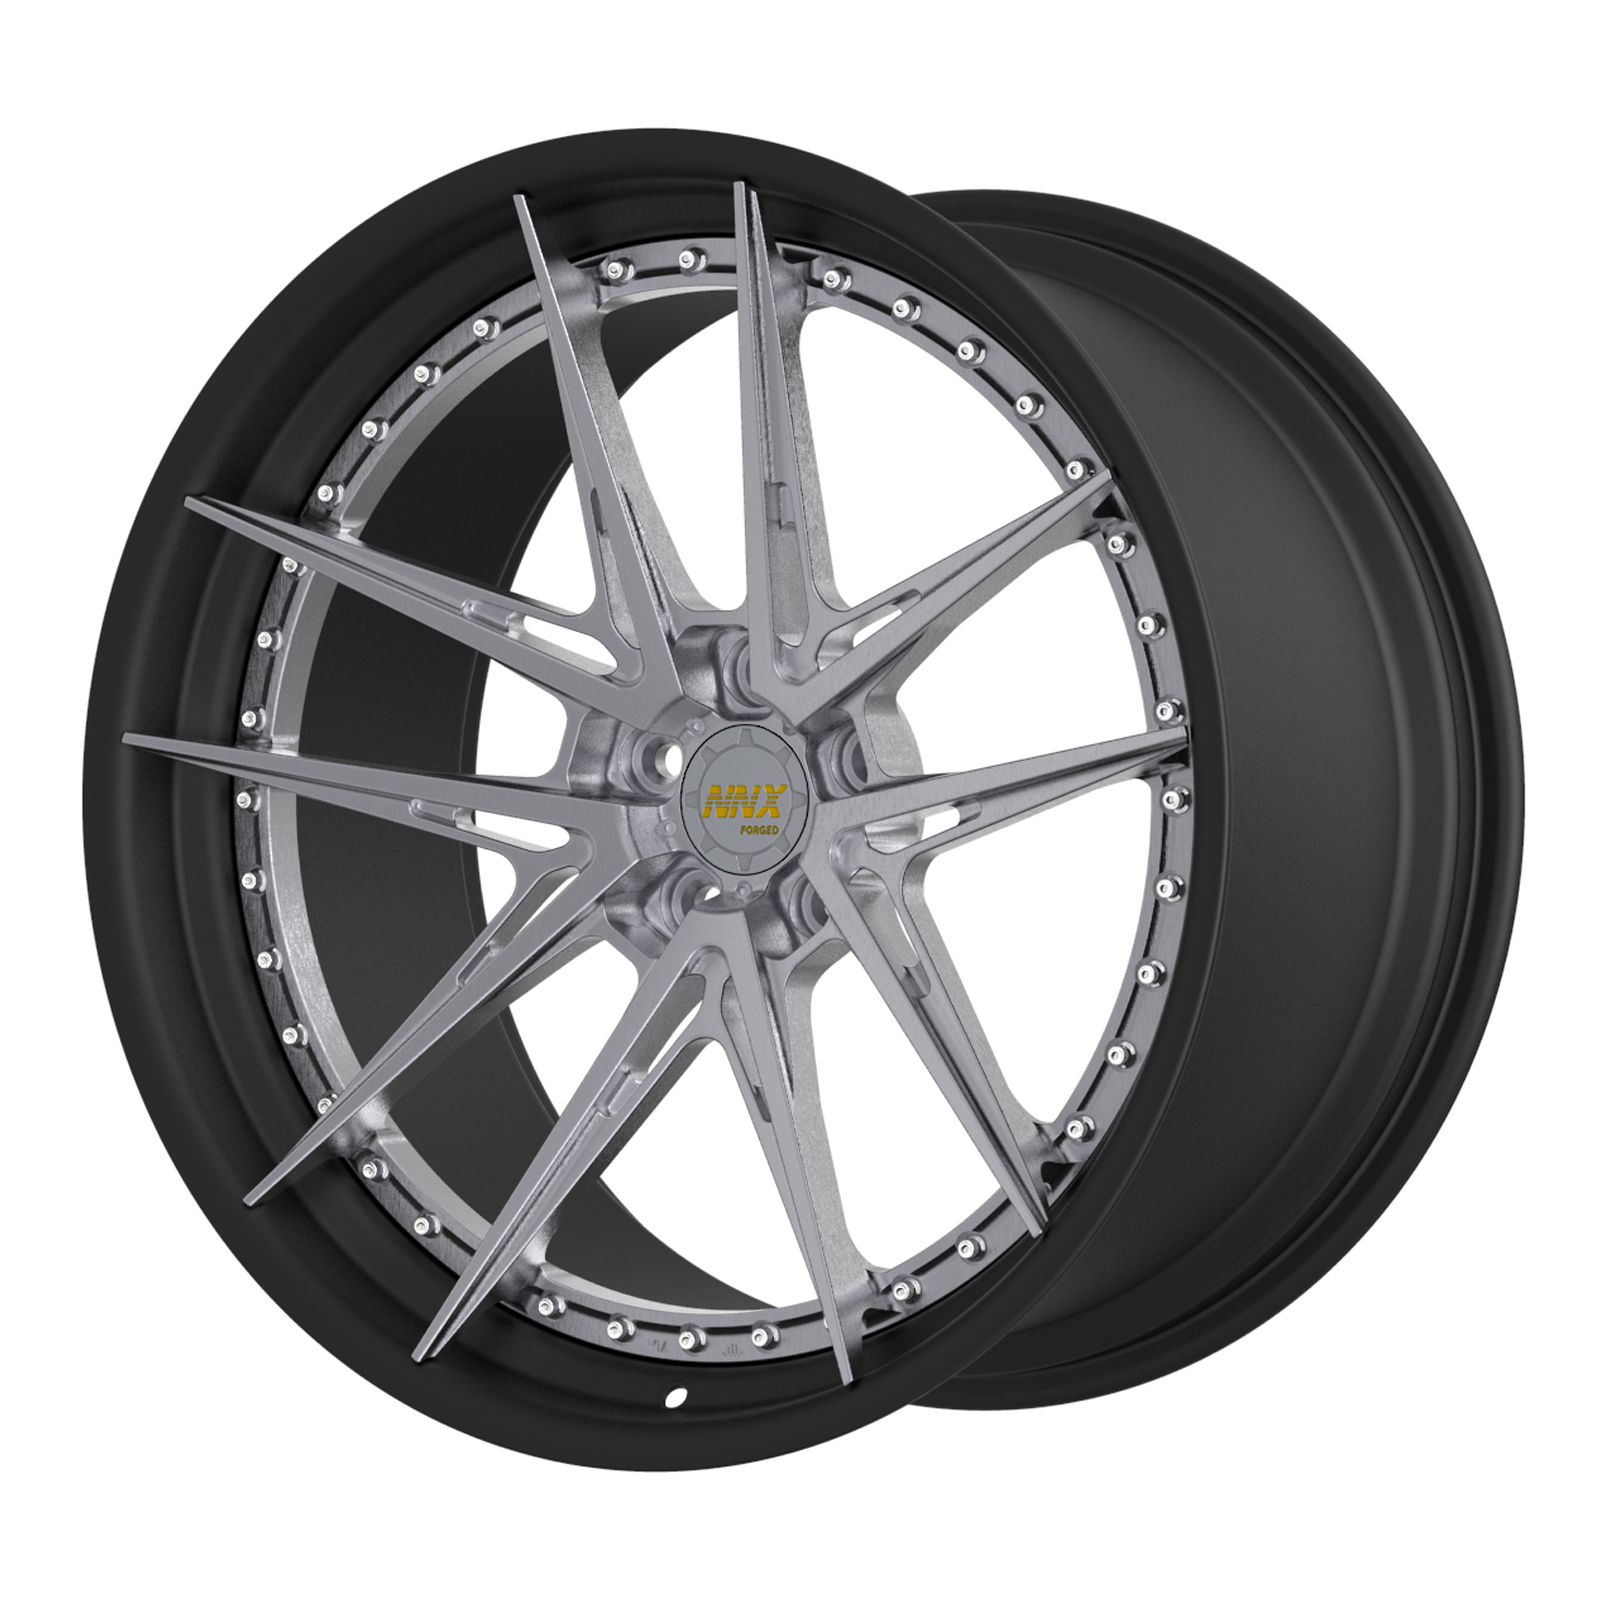 NNX-S118   18-24 Inch Aluminium Wheel High Standard Forged Wheels Pcd 5x112/120  For Cars Passenger Car Rims